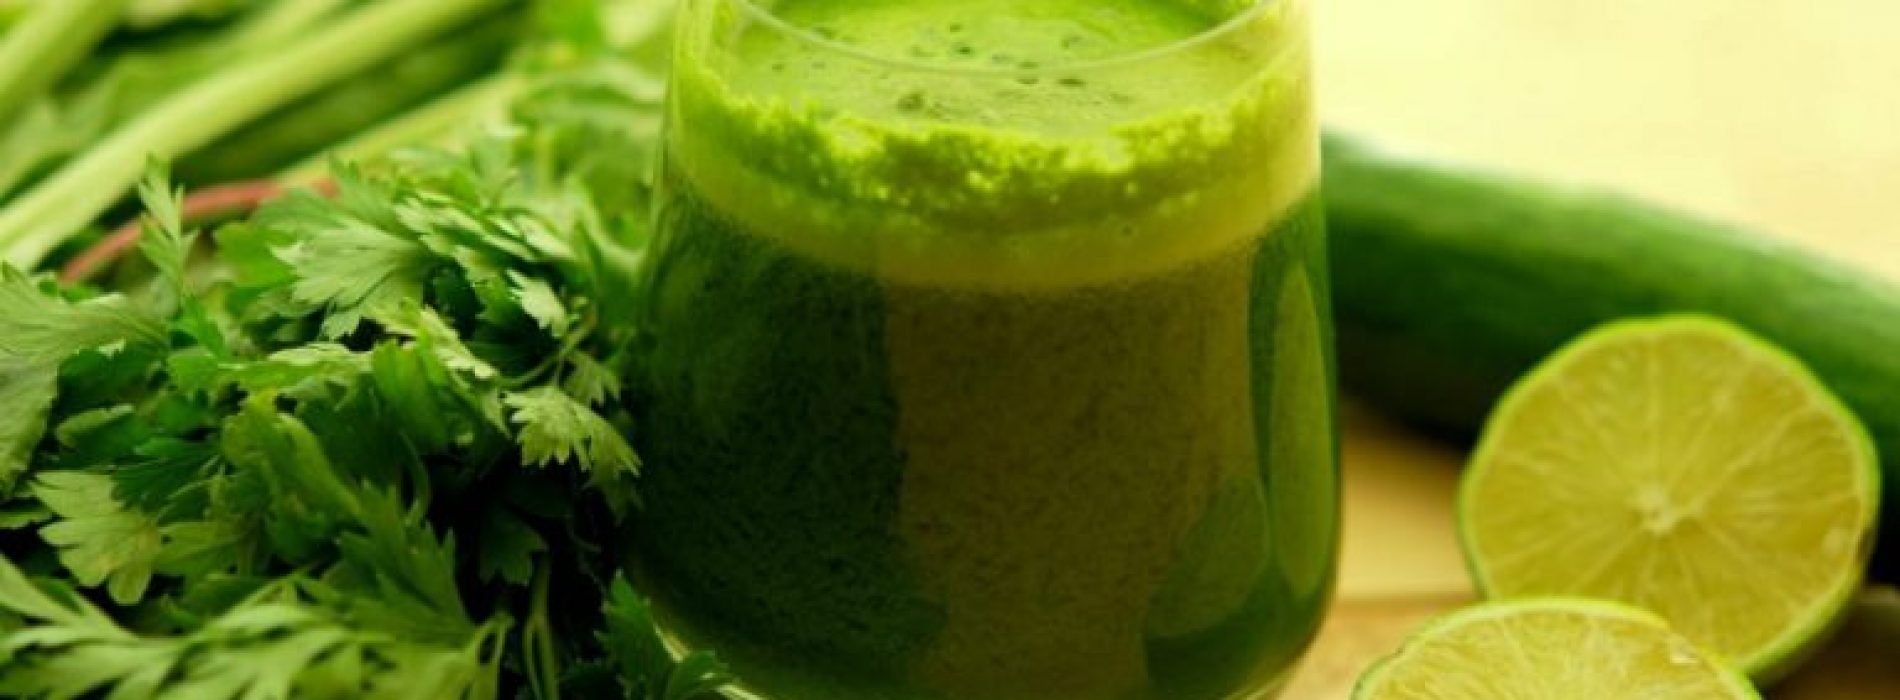 Super groen detox drankje dat alle gifstoffen en vet uit je lichaam zal verwijderen